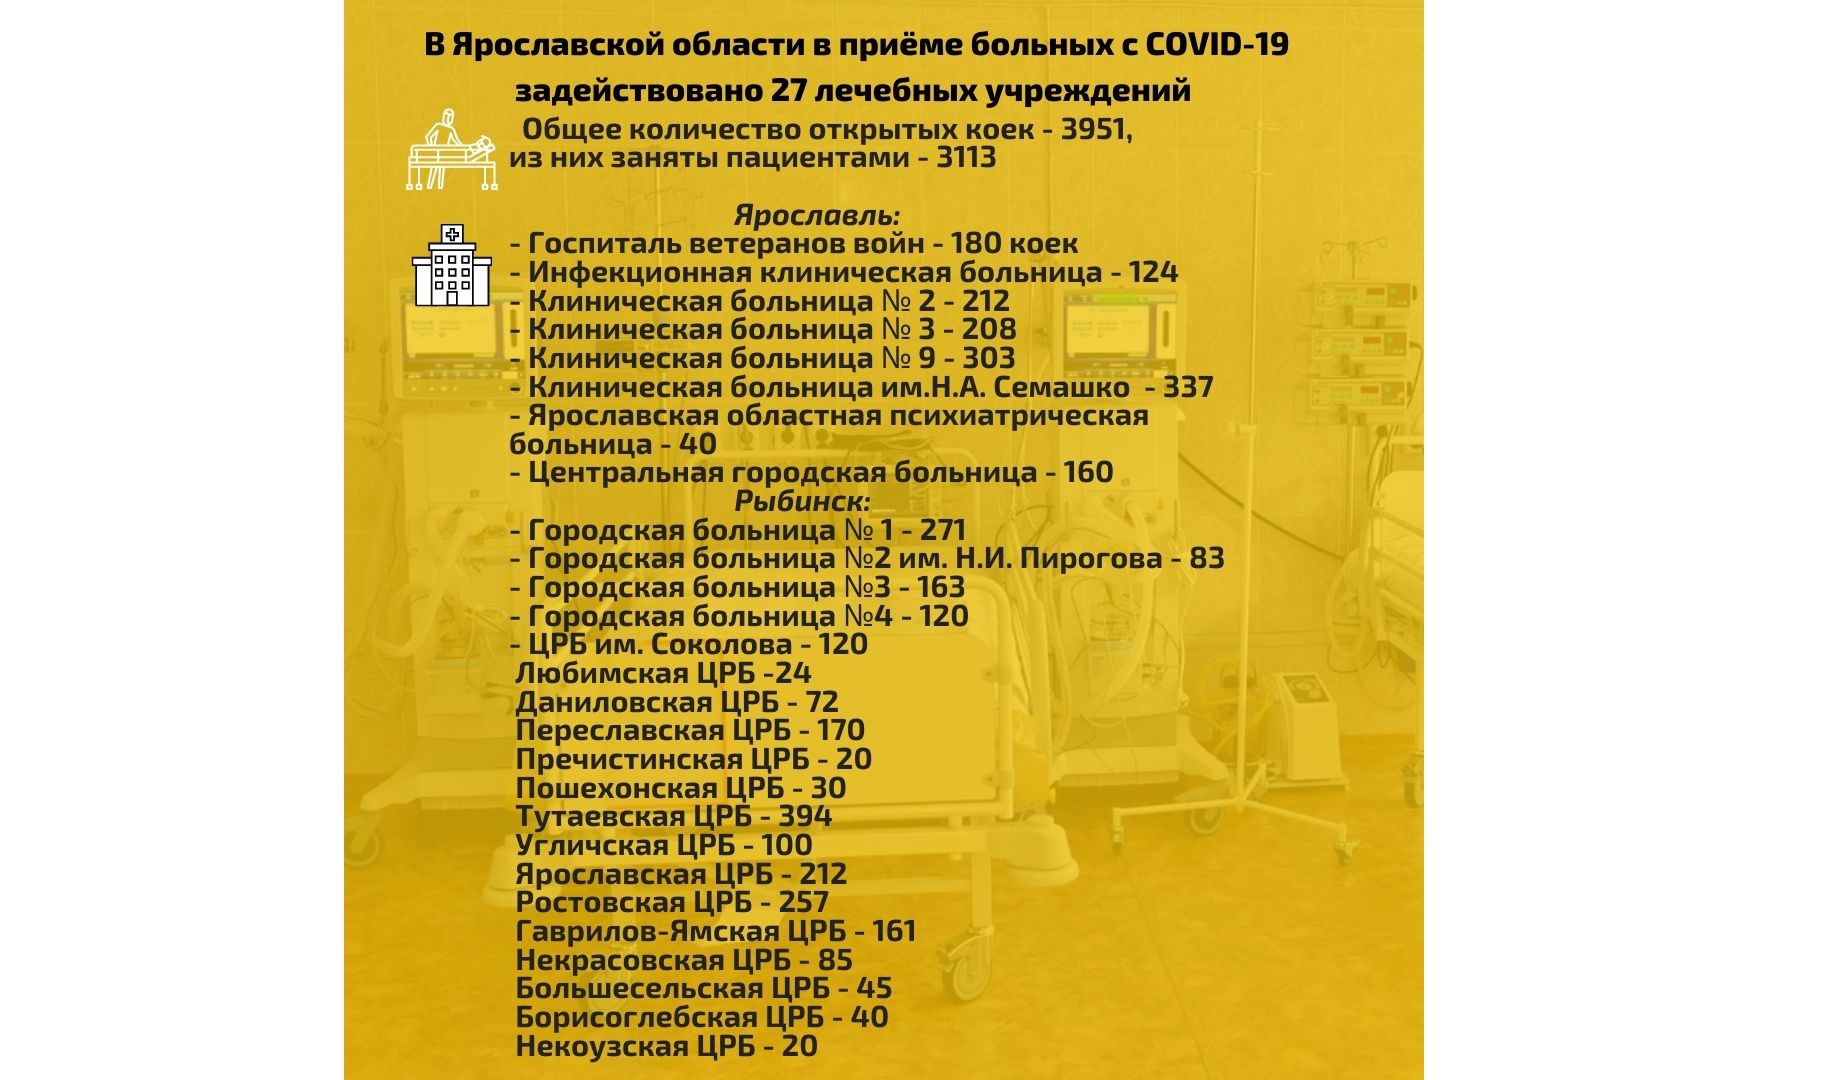 В Ярославской области за неделю развернули еще 170 коек для пациентов с коронавирусом